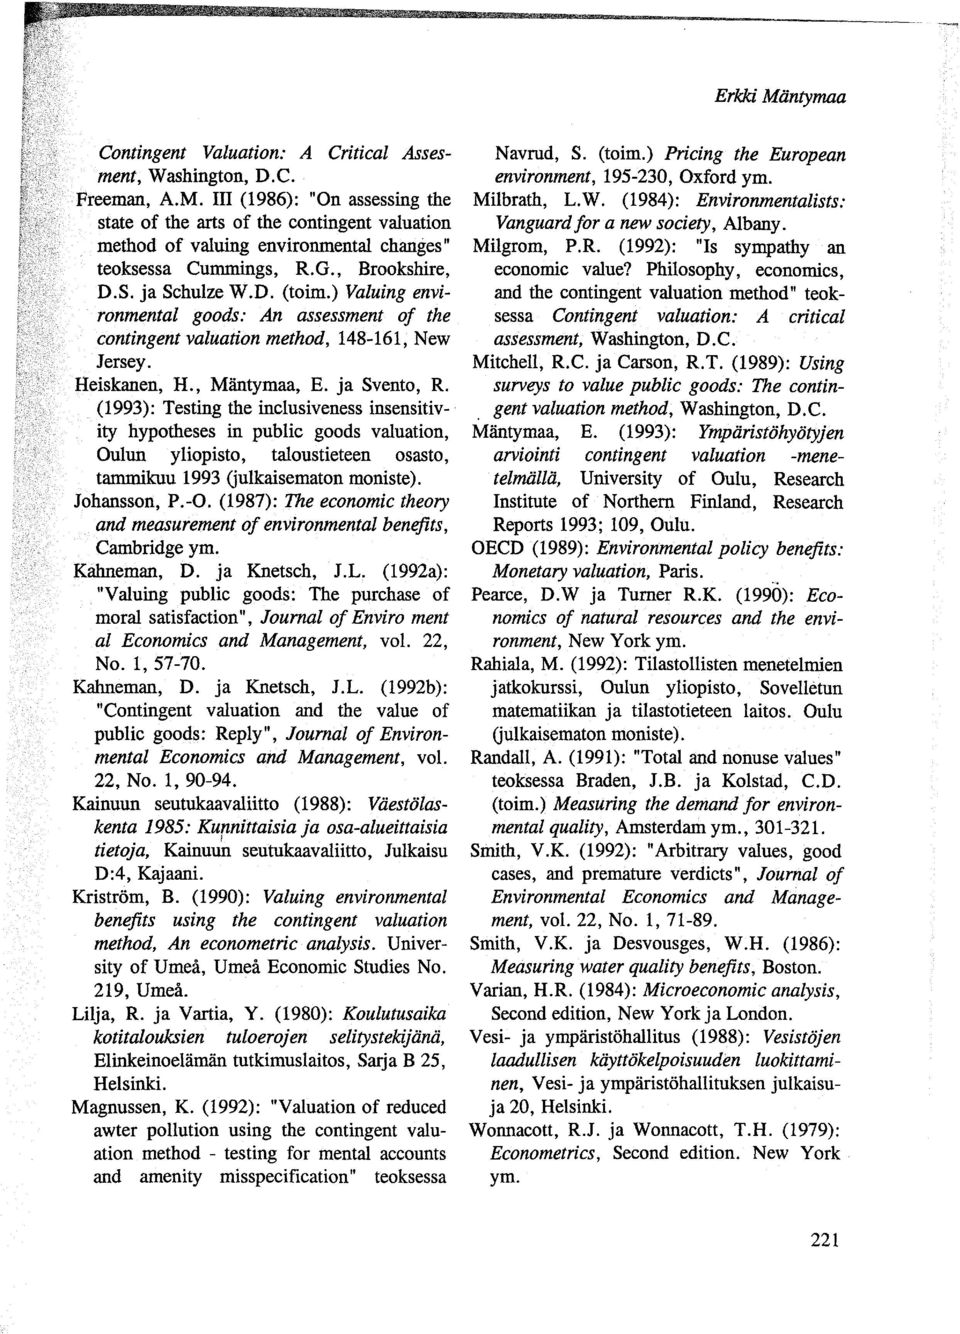 (1993): Testing the inclusiveness insensitiv-. ity hypotheses in public goods valuation, Oulun yliopisto, taloustieteen osasto, tammikuu 1993 Gulkaisematon moniste). Johansson, P.-O.